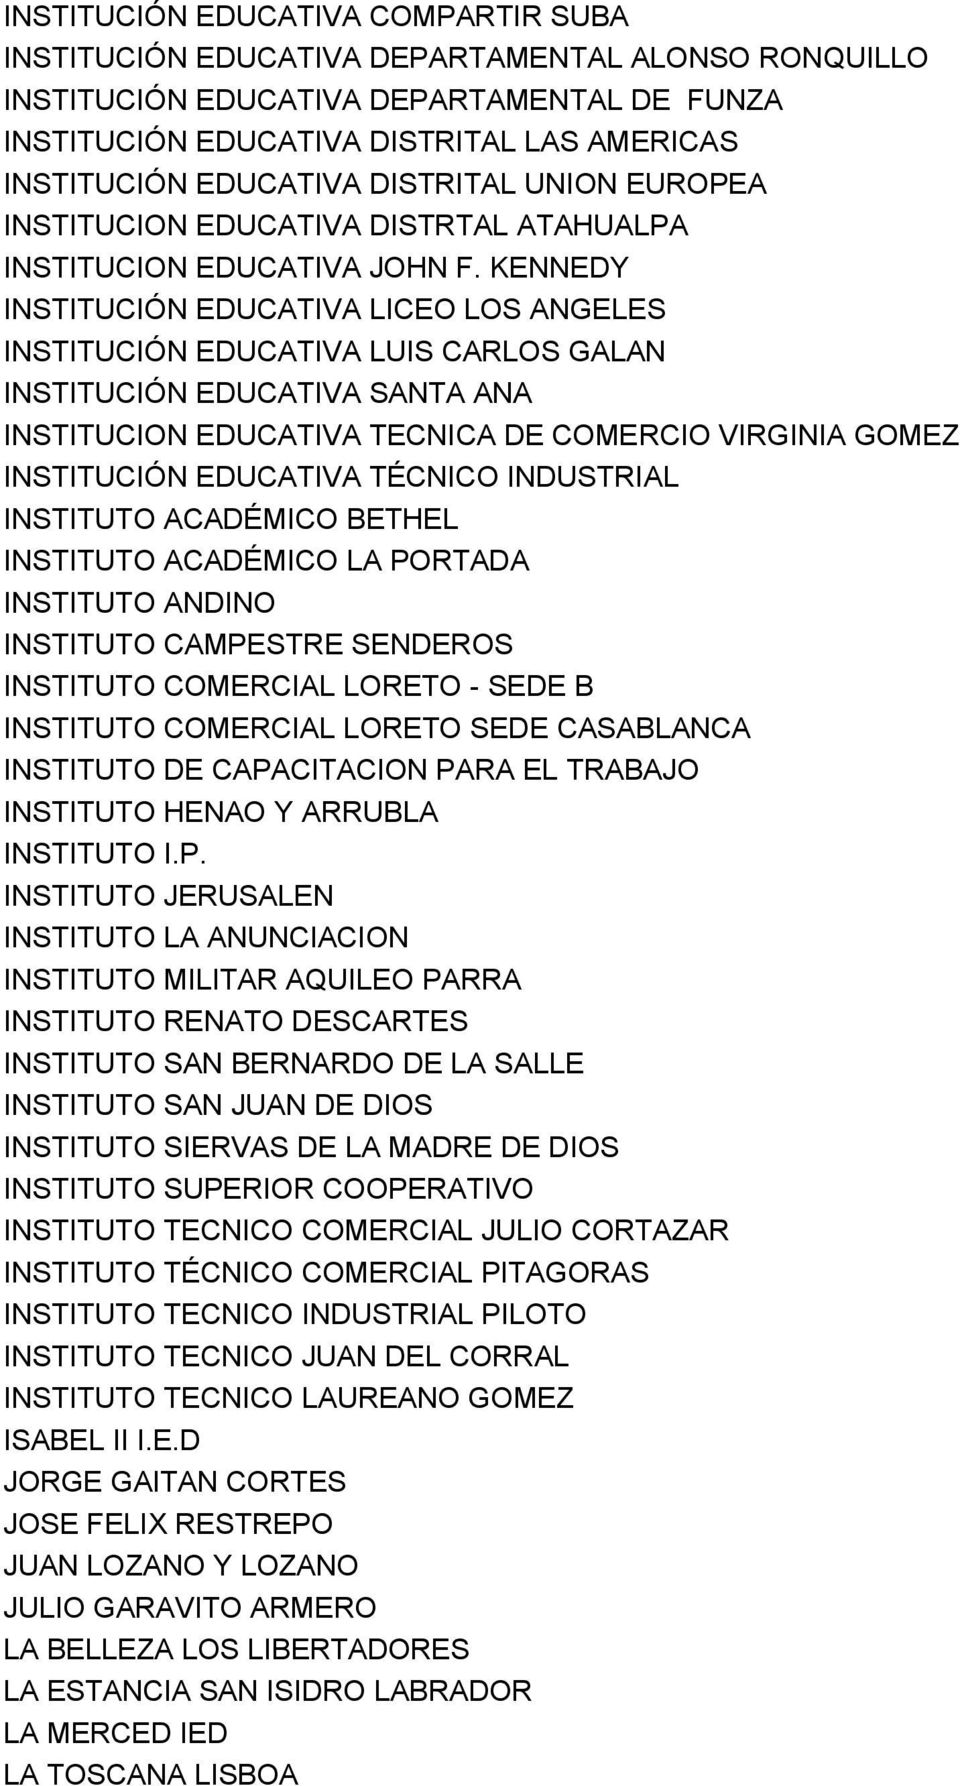 KENNEDY INSTITUCIÓN EDUCATIVA LICEO LOS ANGELES INSTITUCIÓN EDUCATIVA LUIS CARLOS GALAN INSTITUCIÓN EDUCATIVA SANTA ANA INSTITUCION EDUCATIVA TECNICA DE COMERCIO VIRGINIA GOMEZ INSTITUCIÓN EDUCATIVA